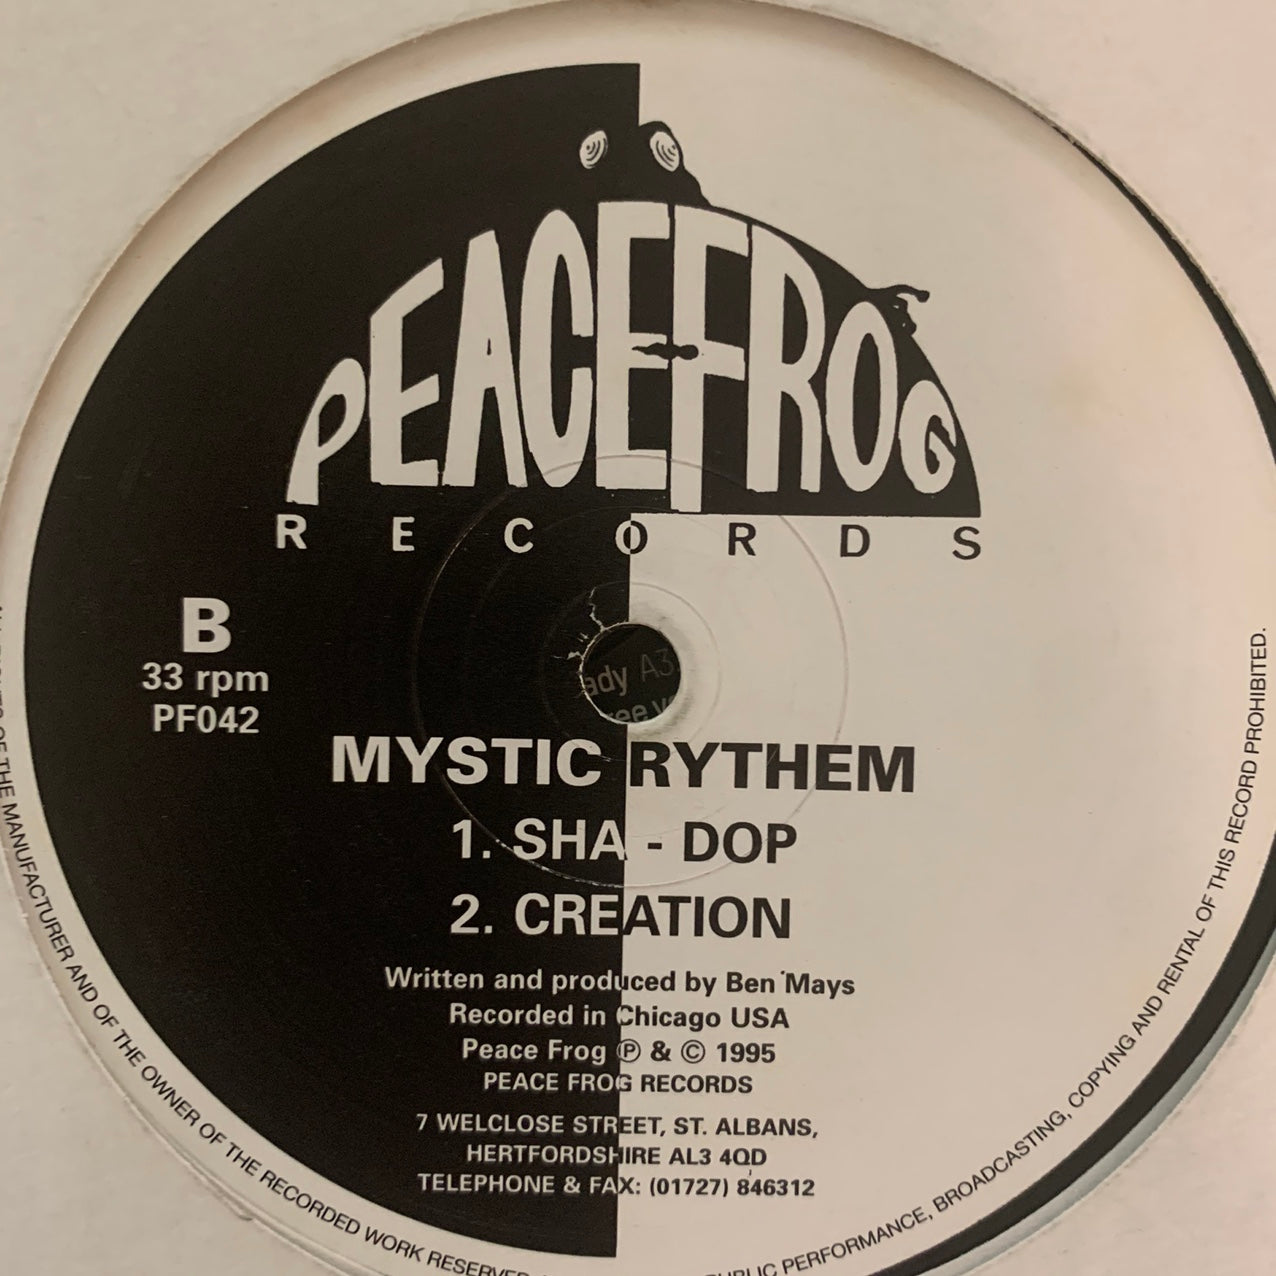 Mystic Rythem “Track Relaxer” 3 Track 12inch Vinyl